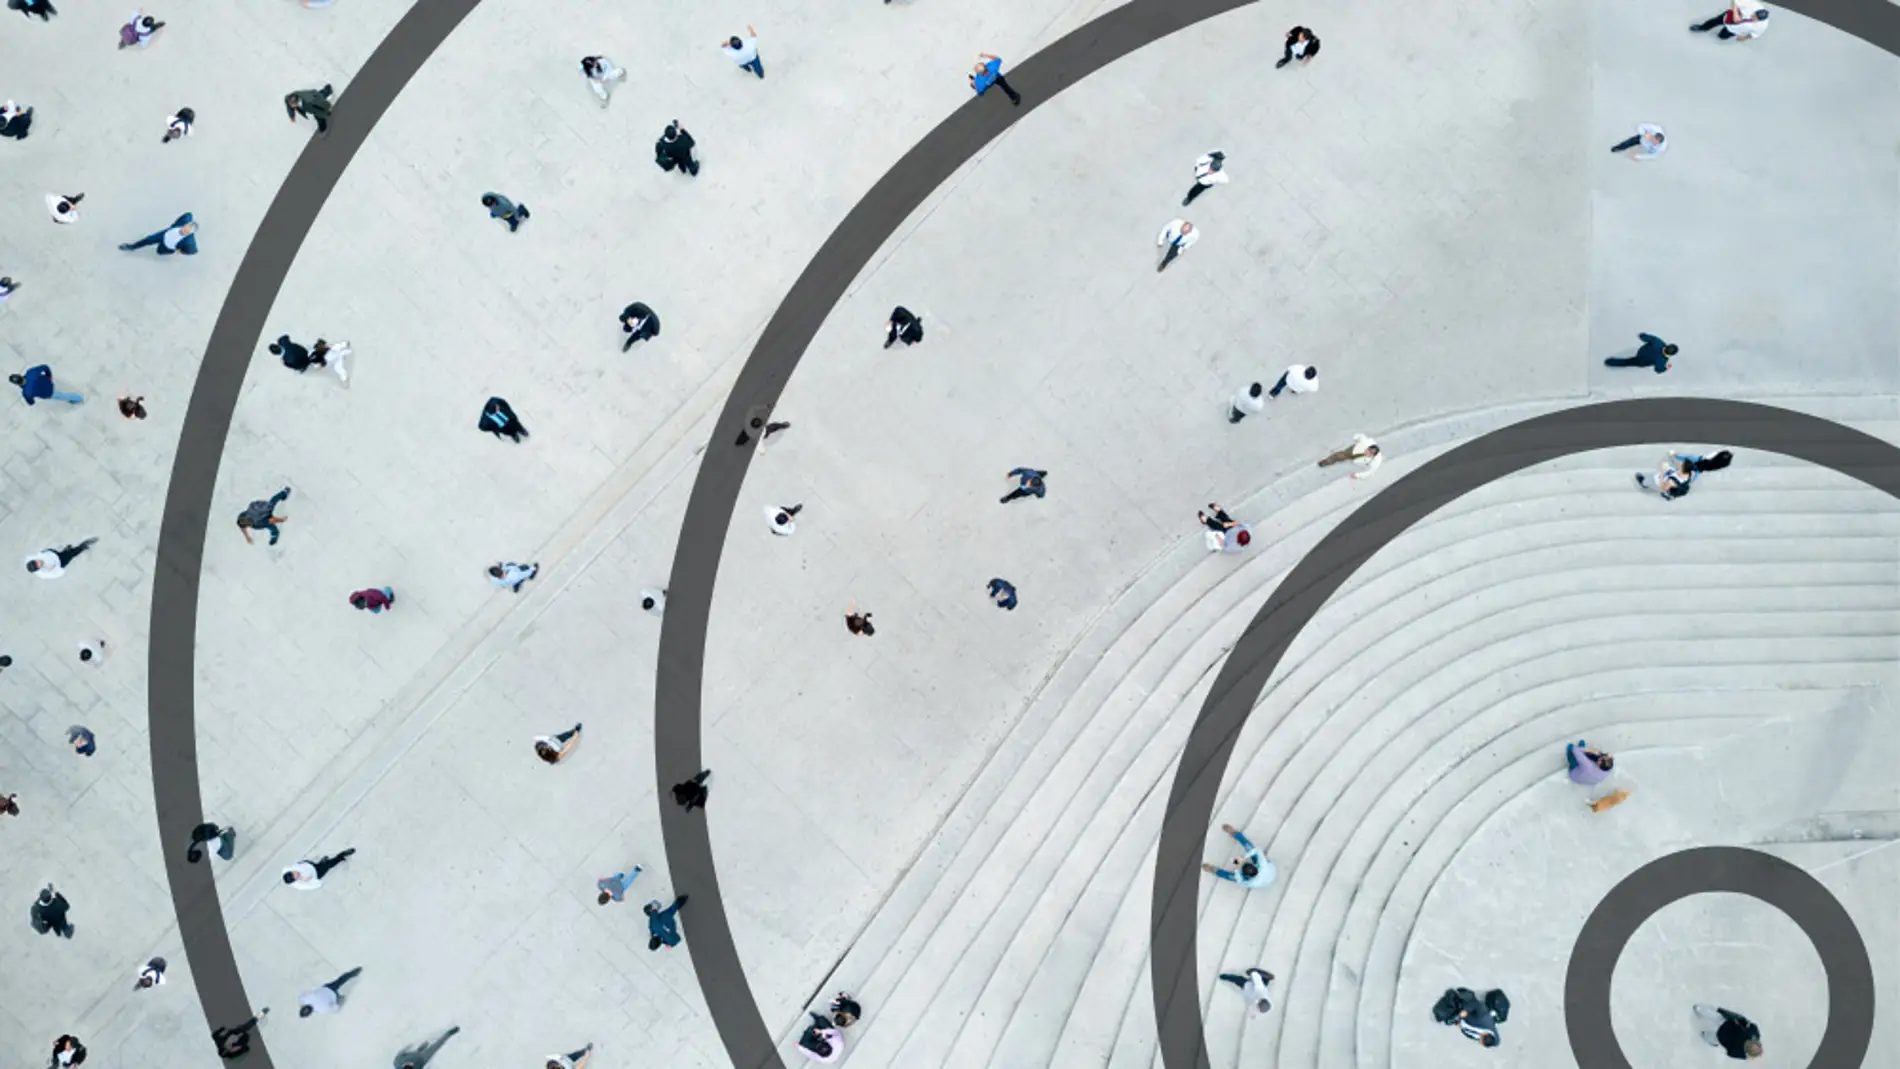 Personas paseando por una plaza desde una perspectiva aérea con círculos en torno a ellas